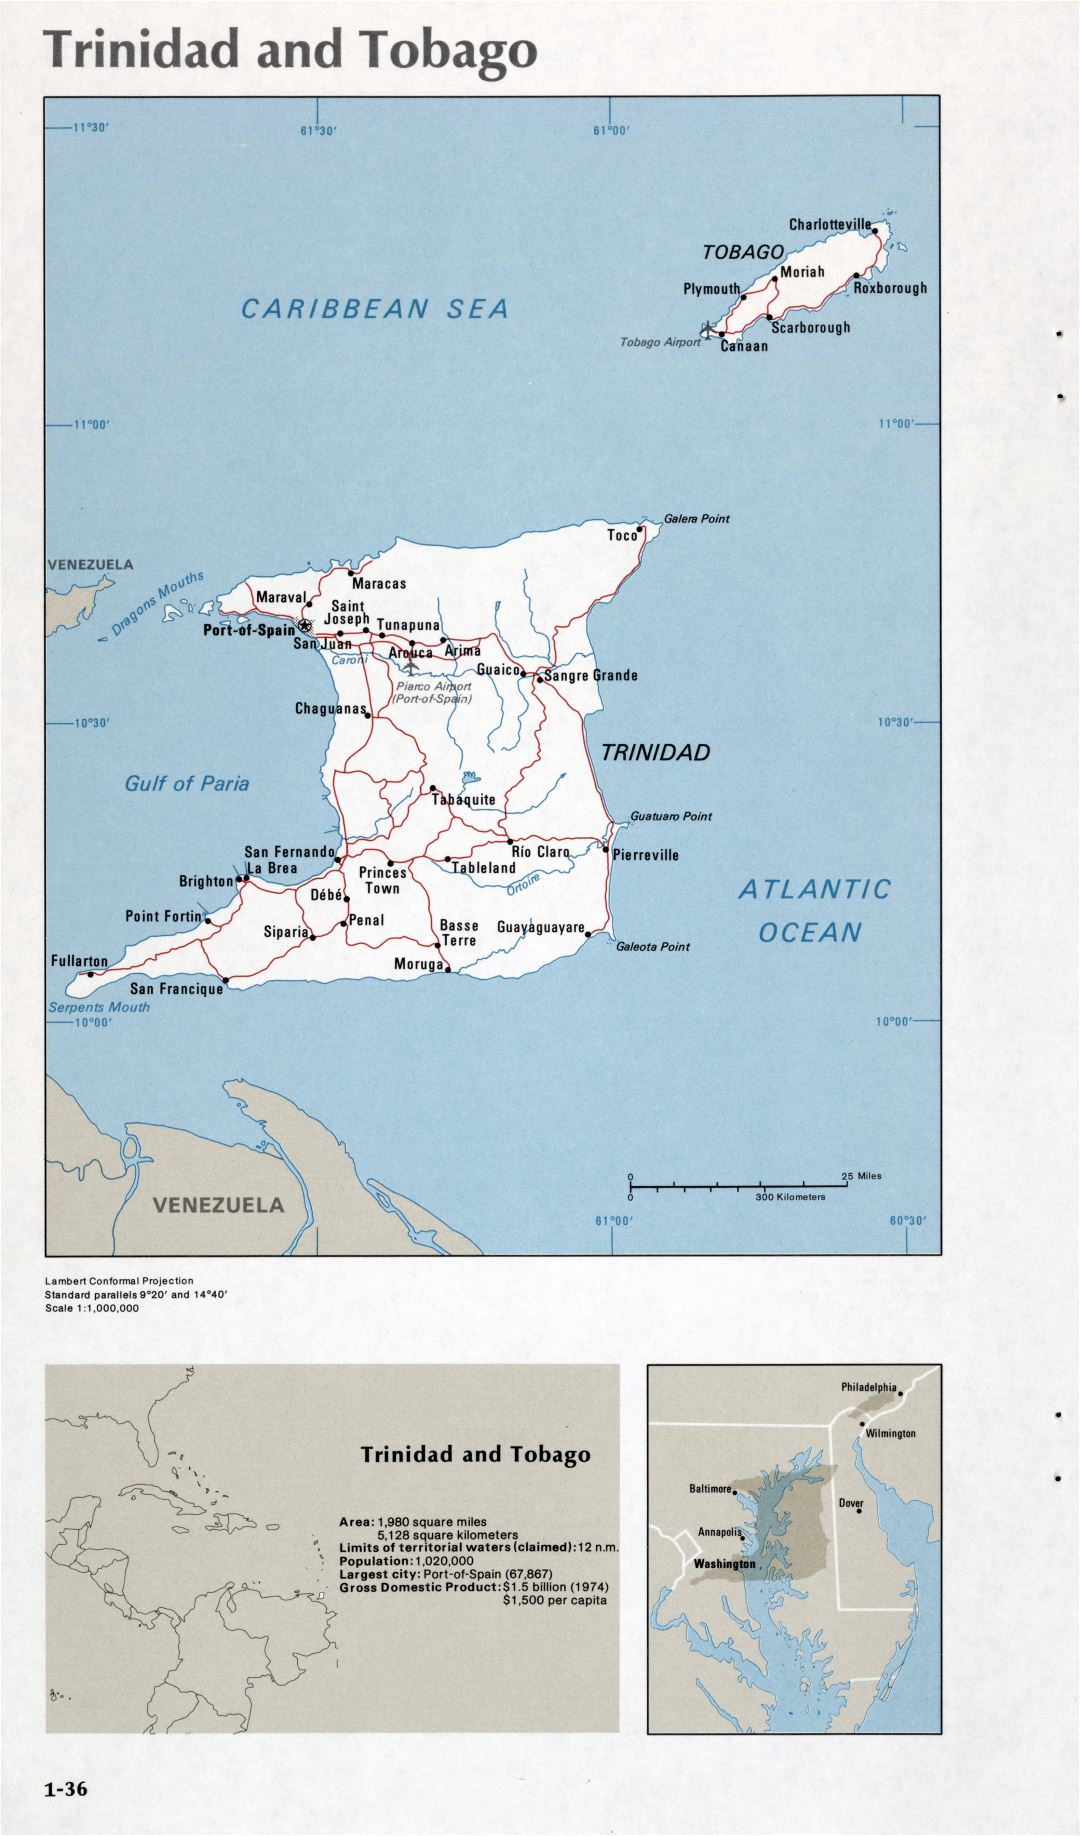 Map of Trinidad and Tobago (1-36)